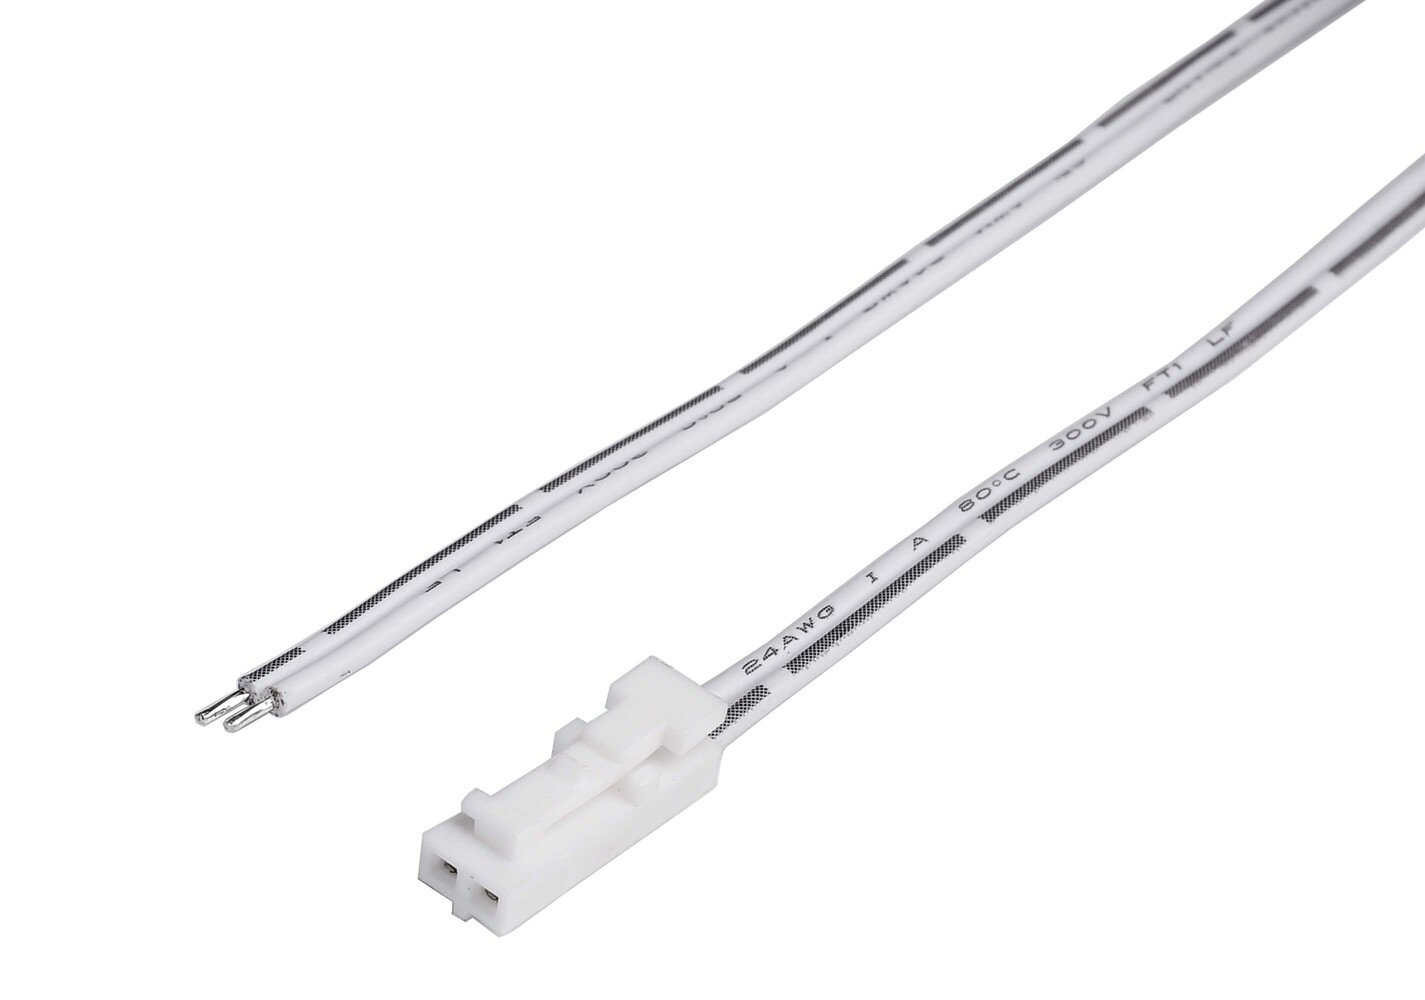 Langes und langlebiges Anschlusskabel und Stecker von der renommierten Marke Deko-Light